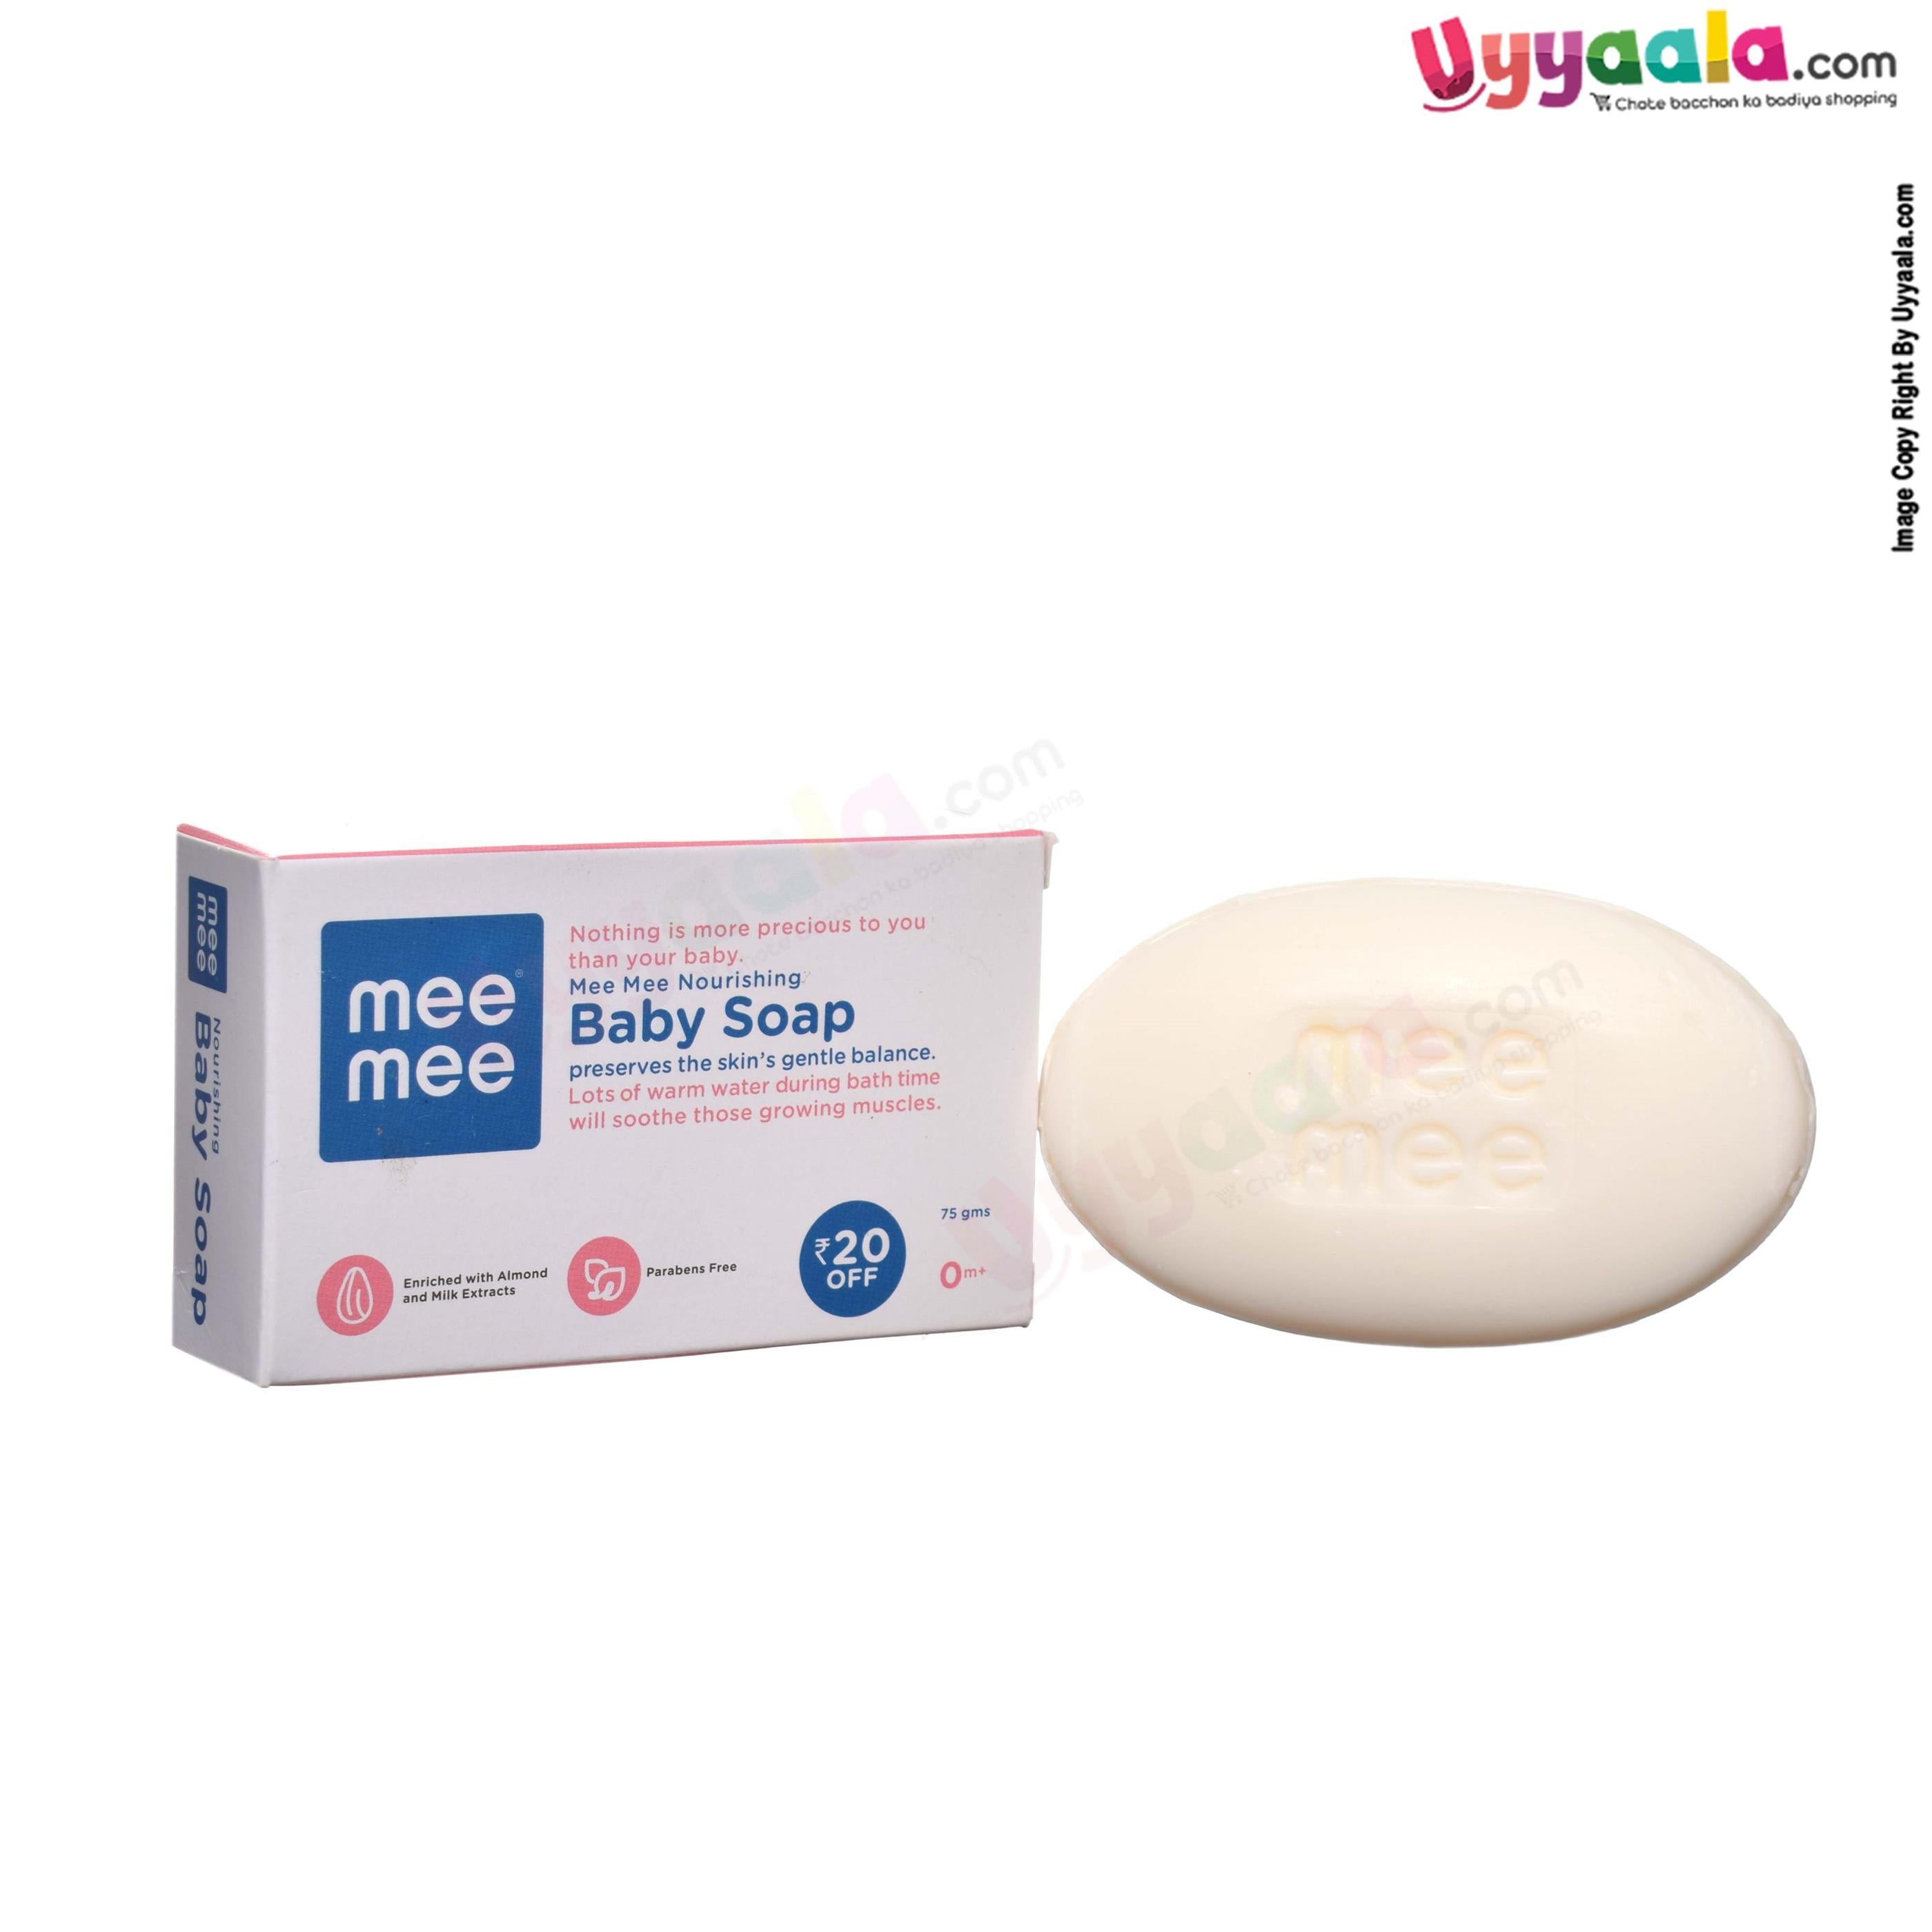 MEE MEE Nourishing baby soap - 75g